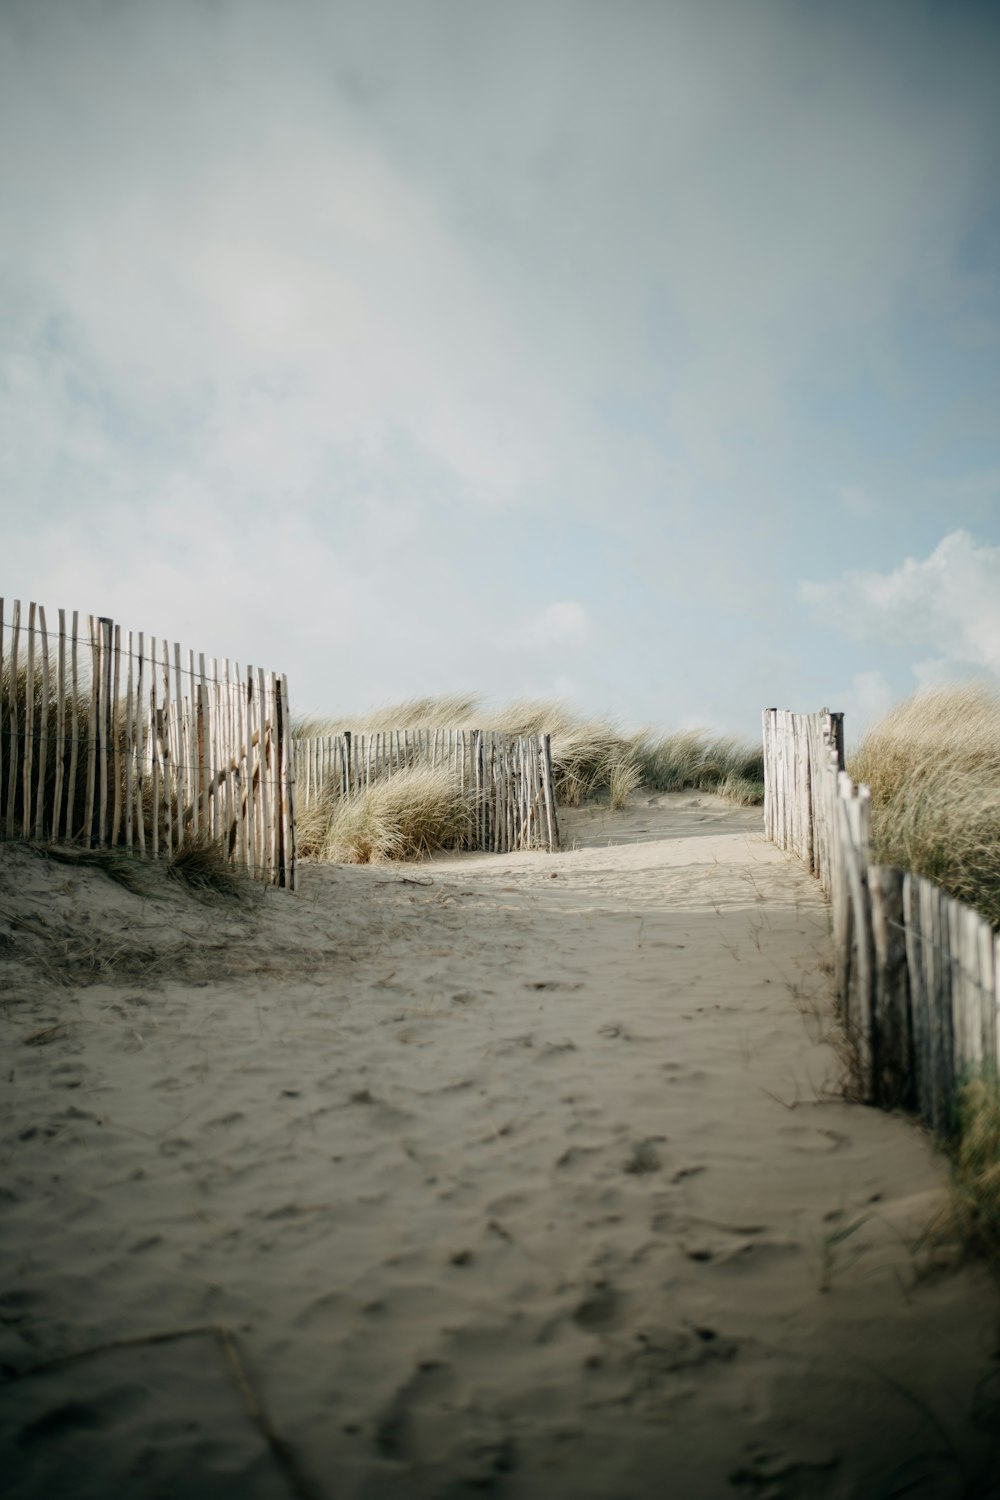 a sandy path leading to a sandy beach